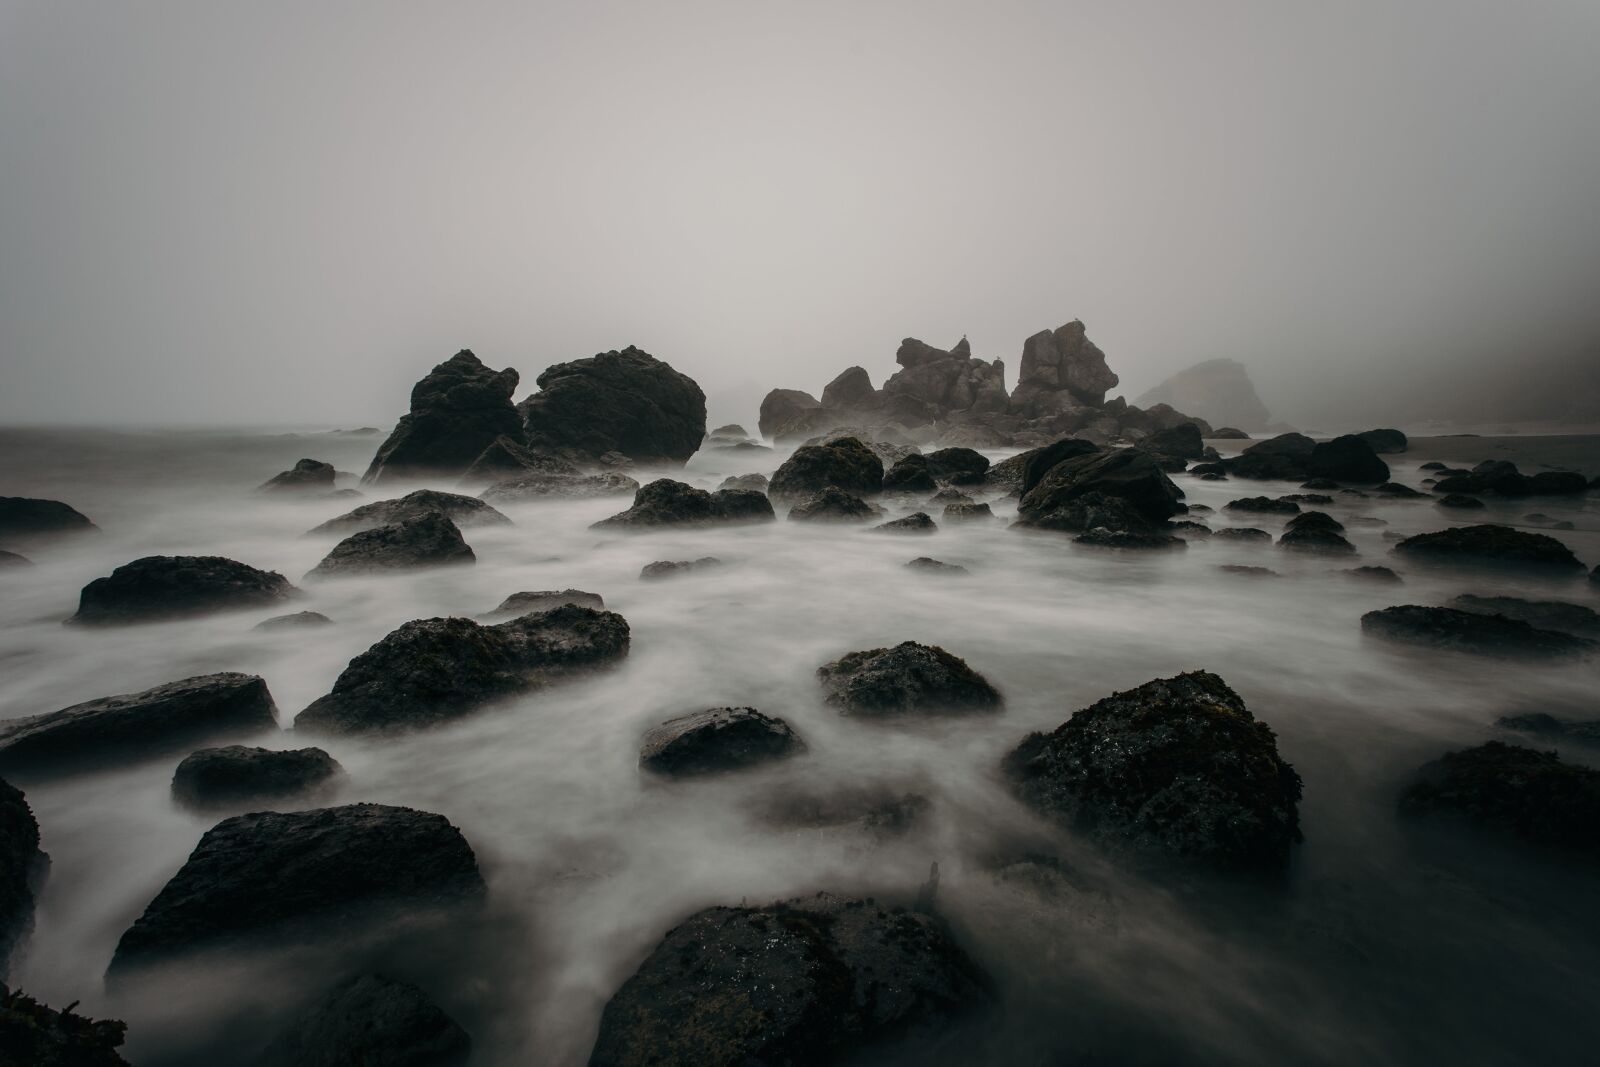 Sony a7 II + Canon EF 17-40mm F4L USM sample photo. Beach, foggy, mist photography